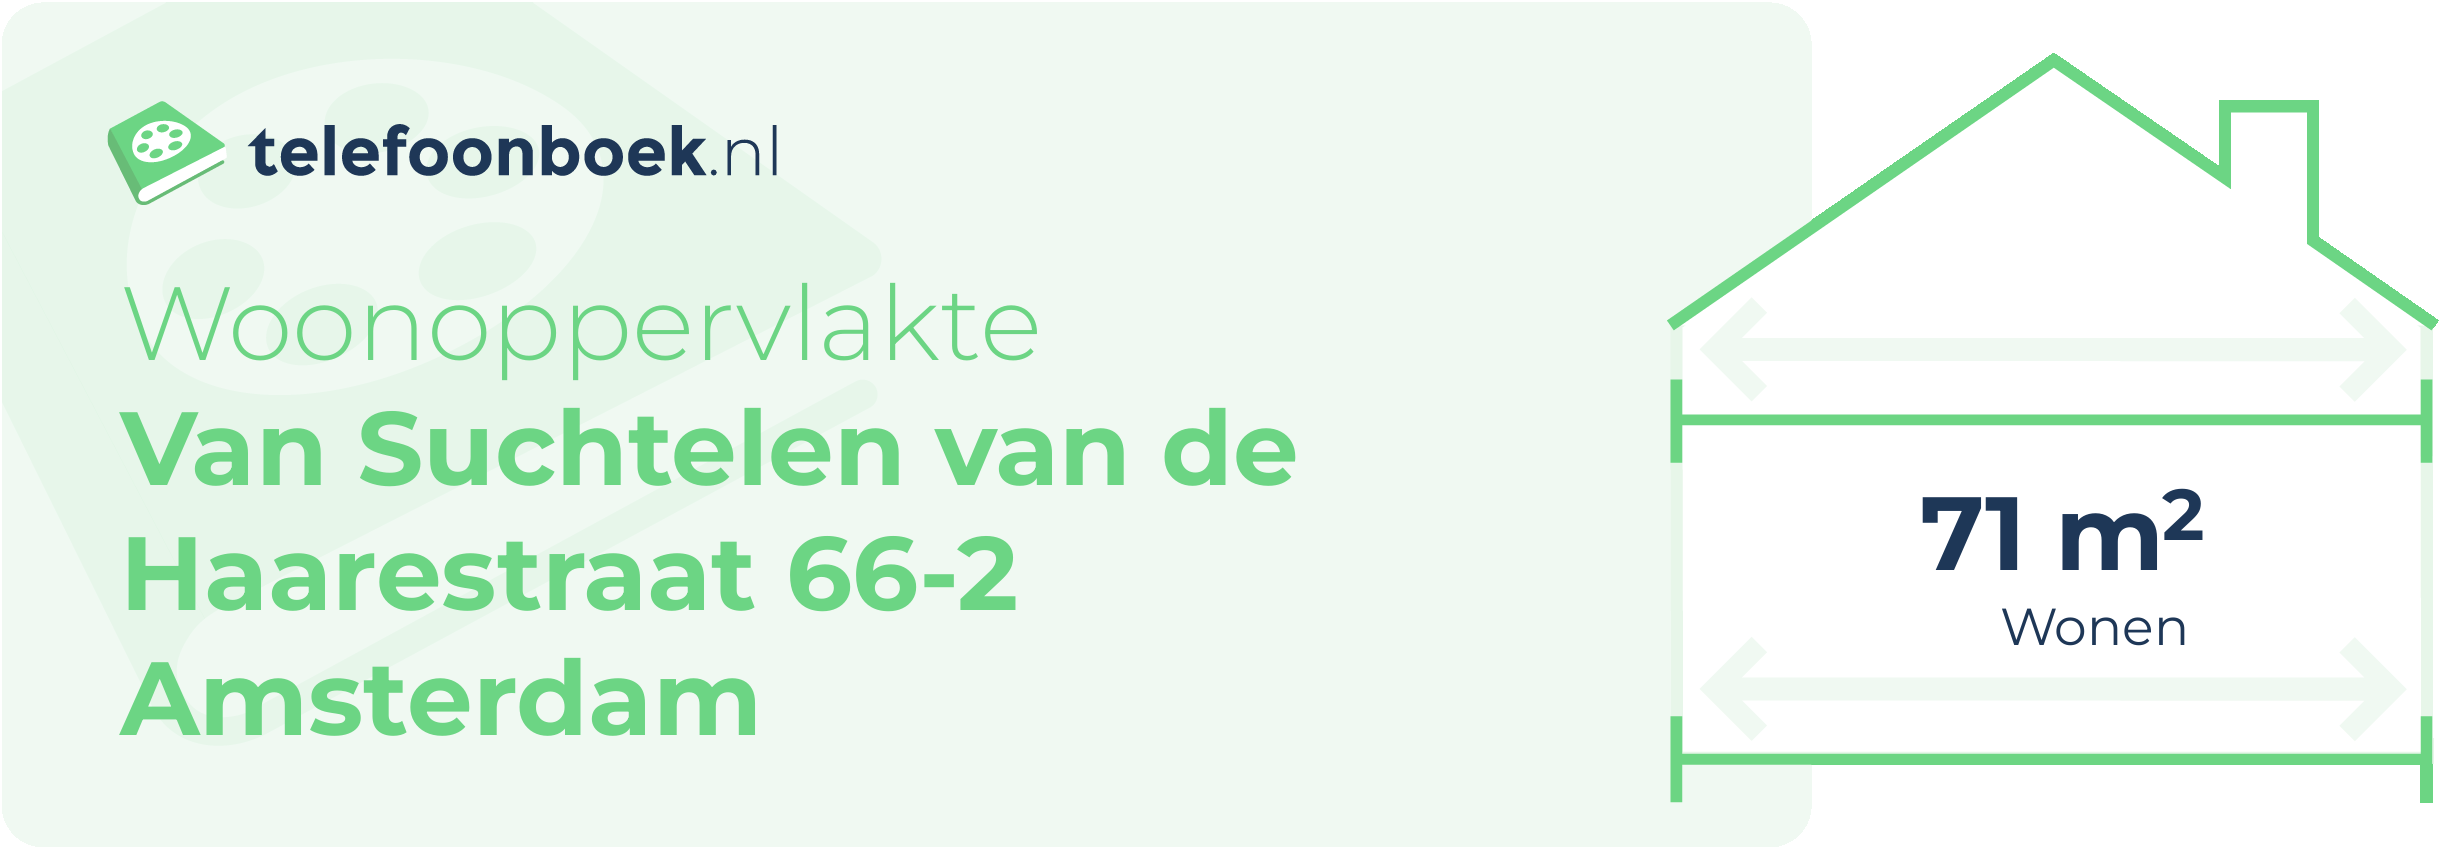 Woonoppervlakte Van Suchtelen Van De Haarestraat 66-2 Amsterdam